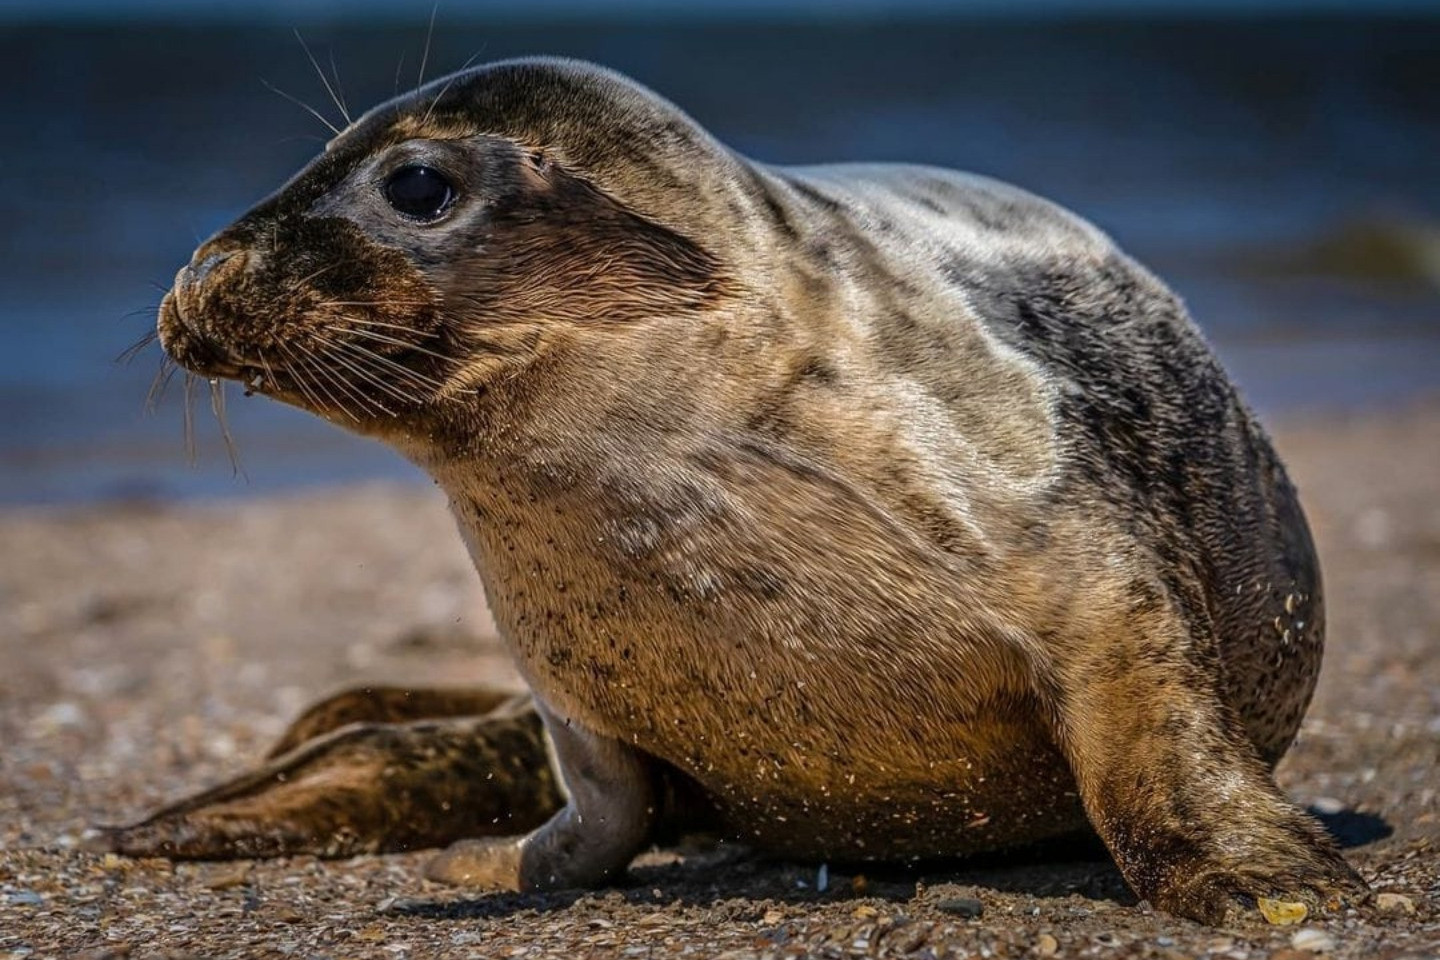 Voorbeeld afbeelding van Bezoekerscentrum A Seal Zeehondenopvang in Stellendam 